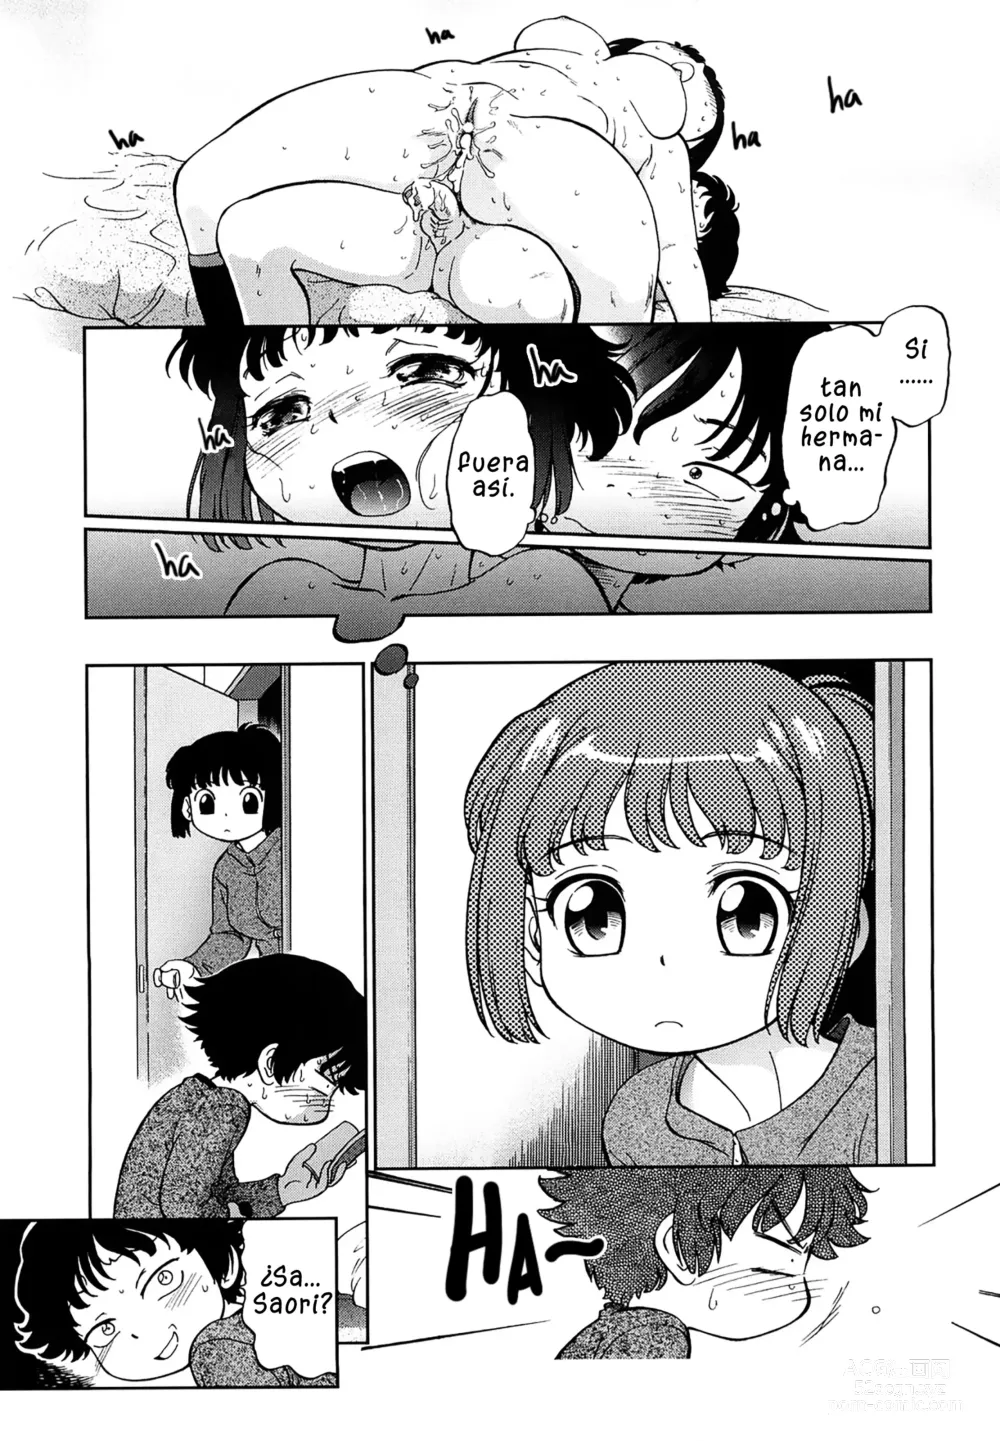 Page 23 of manga Lecciones confinadas de hermanos lascivos